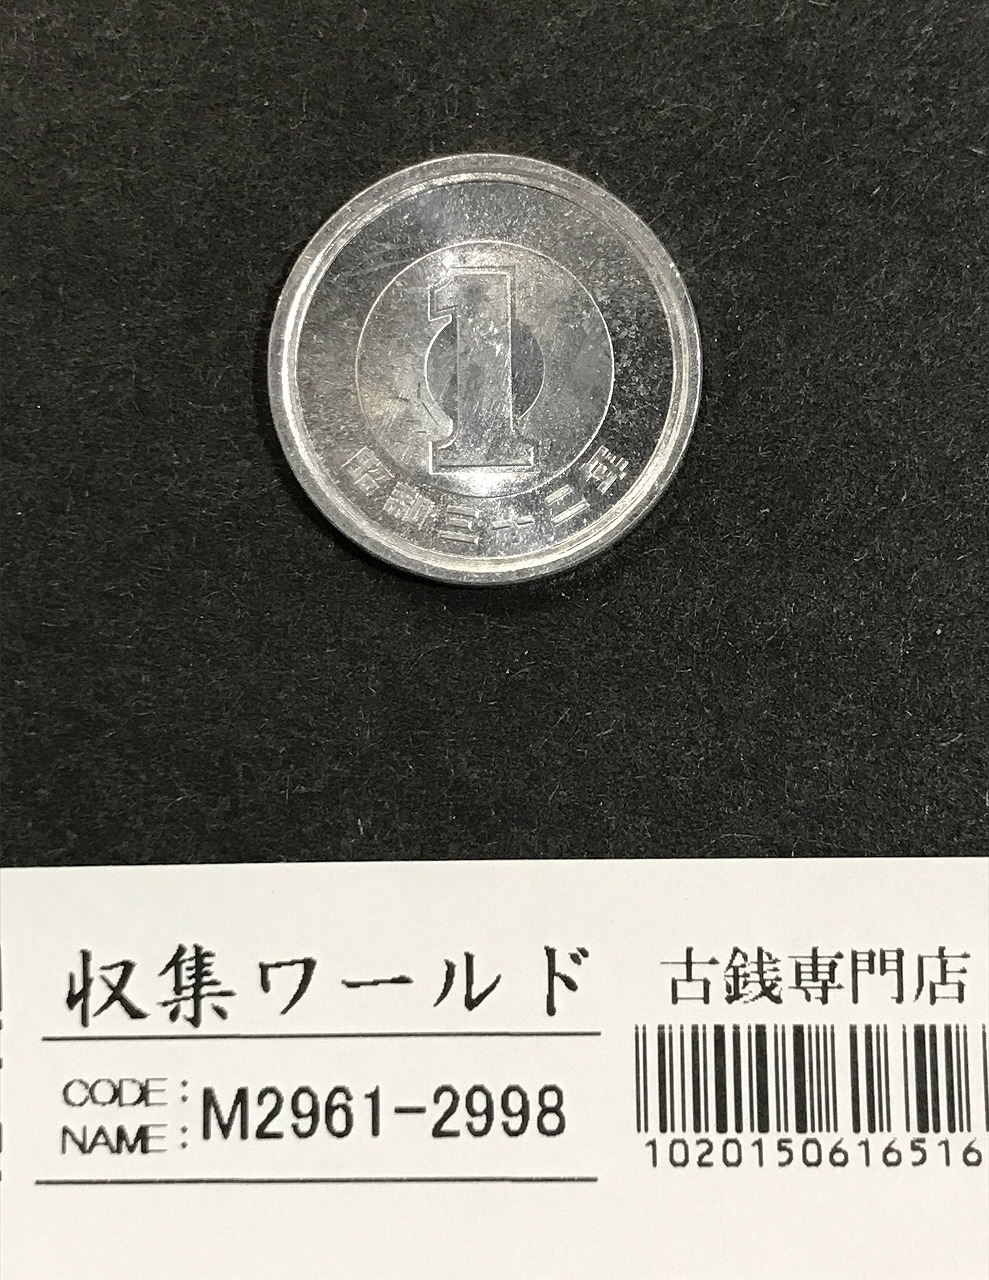 1円アルミ貨 (若木) 昭和32年銘1957 準特年 ロール出し 未使用極美